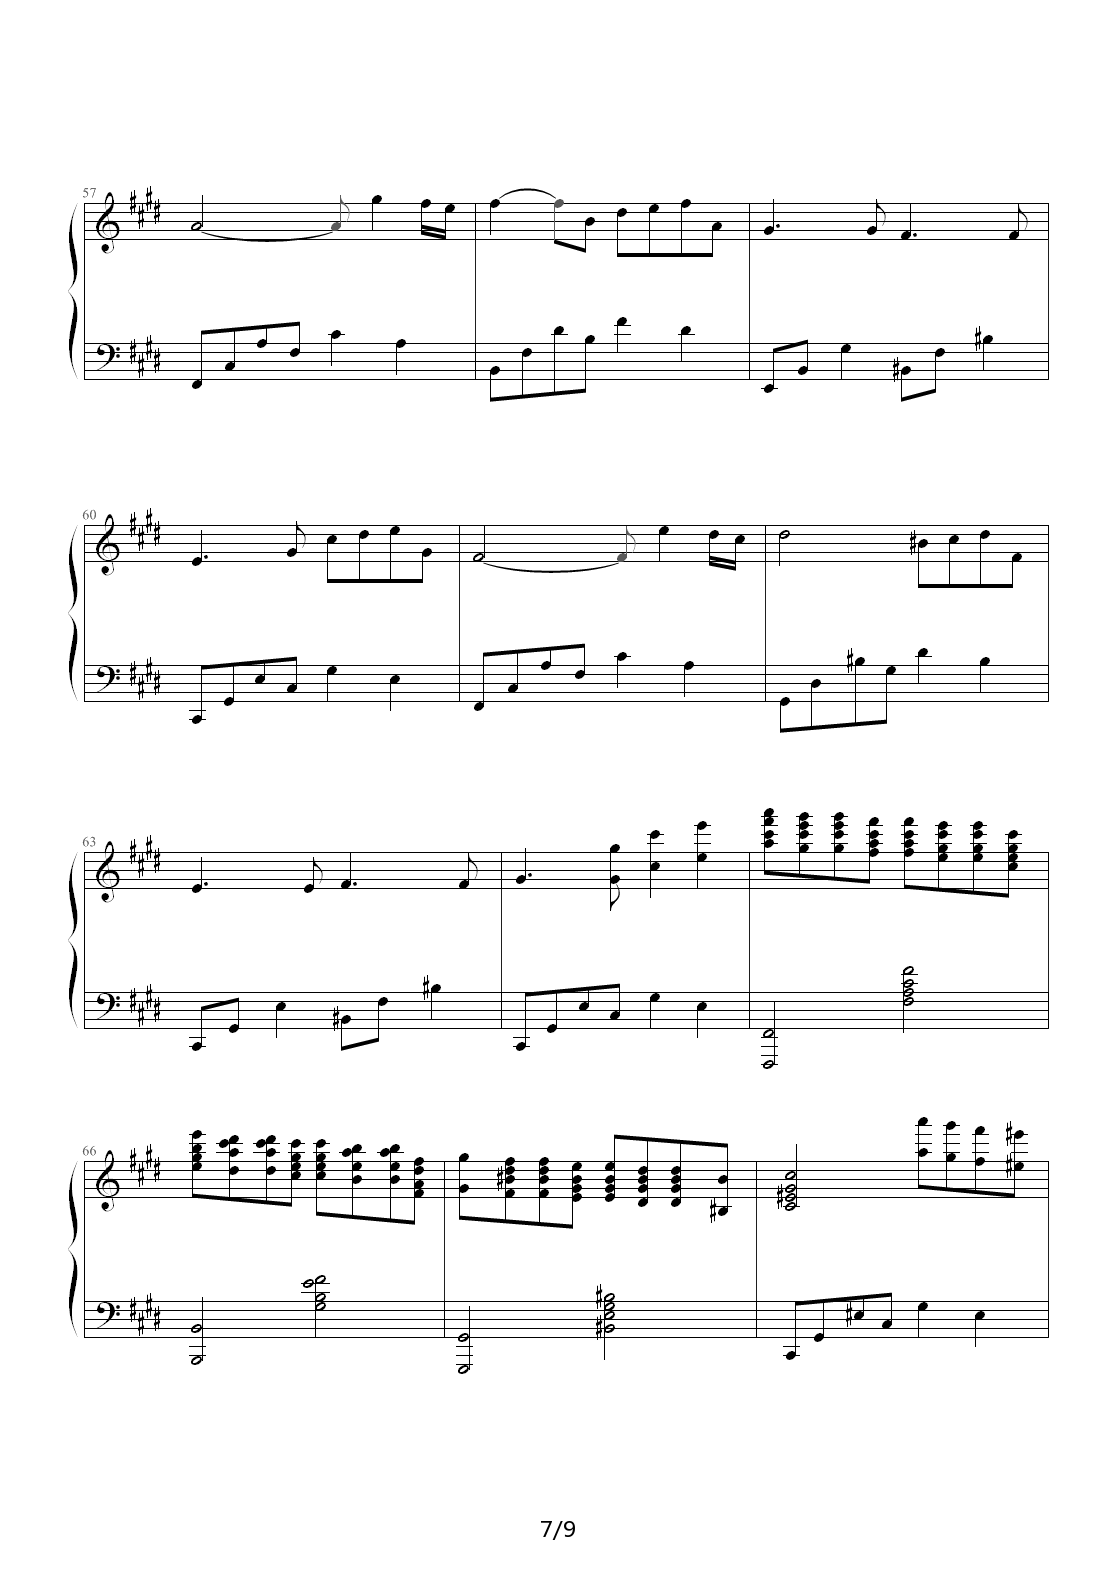 利鲁之歌钢琴谱|利鲁之歌最新钢琴谱|利鲁之歌钢琴谱下载